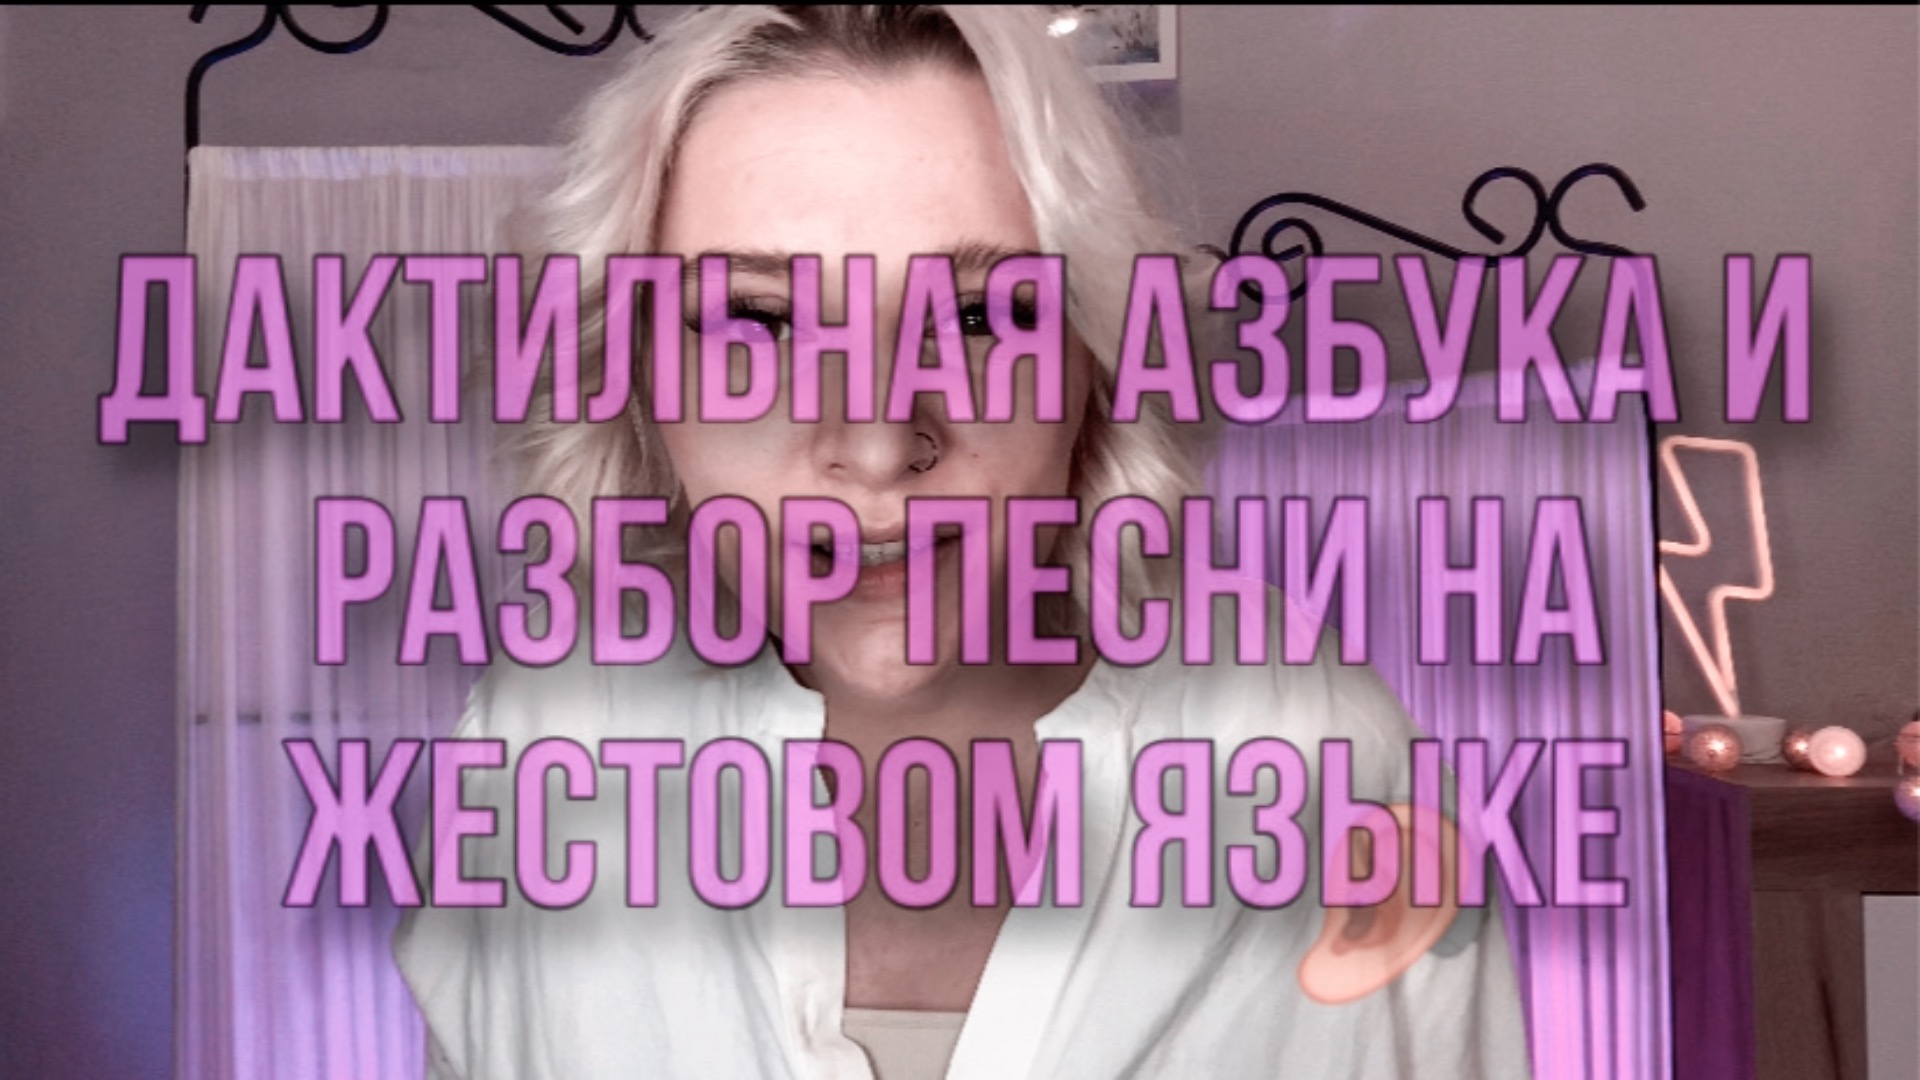 Русская дактильная азбука и отрывок песни на жестовом языке